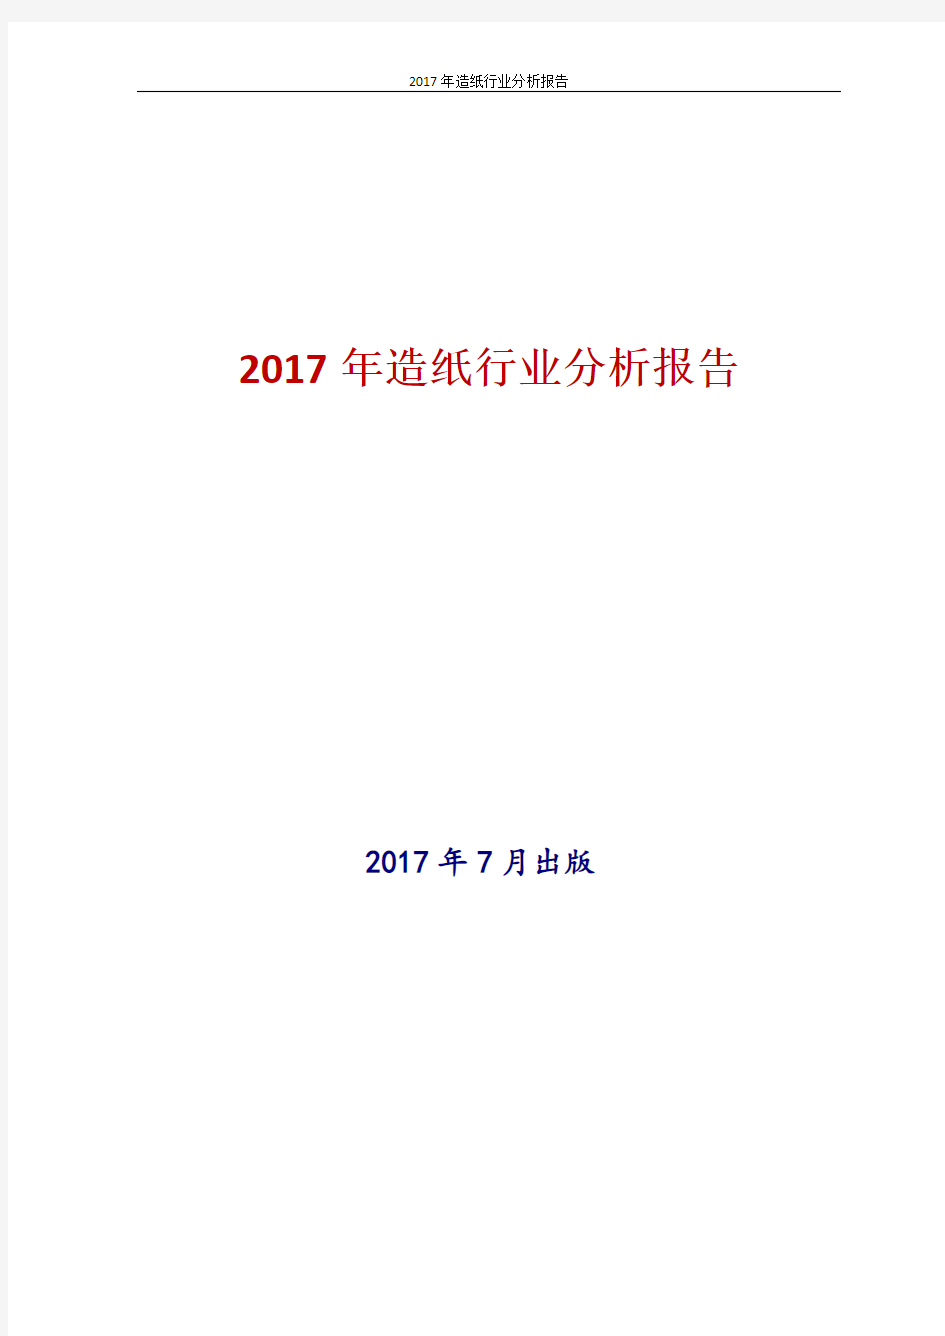 2017年造纸行业分析报告